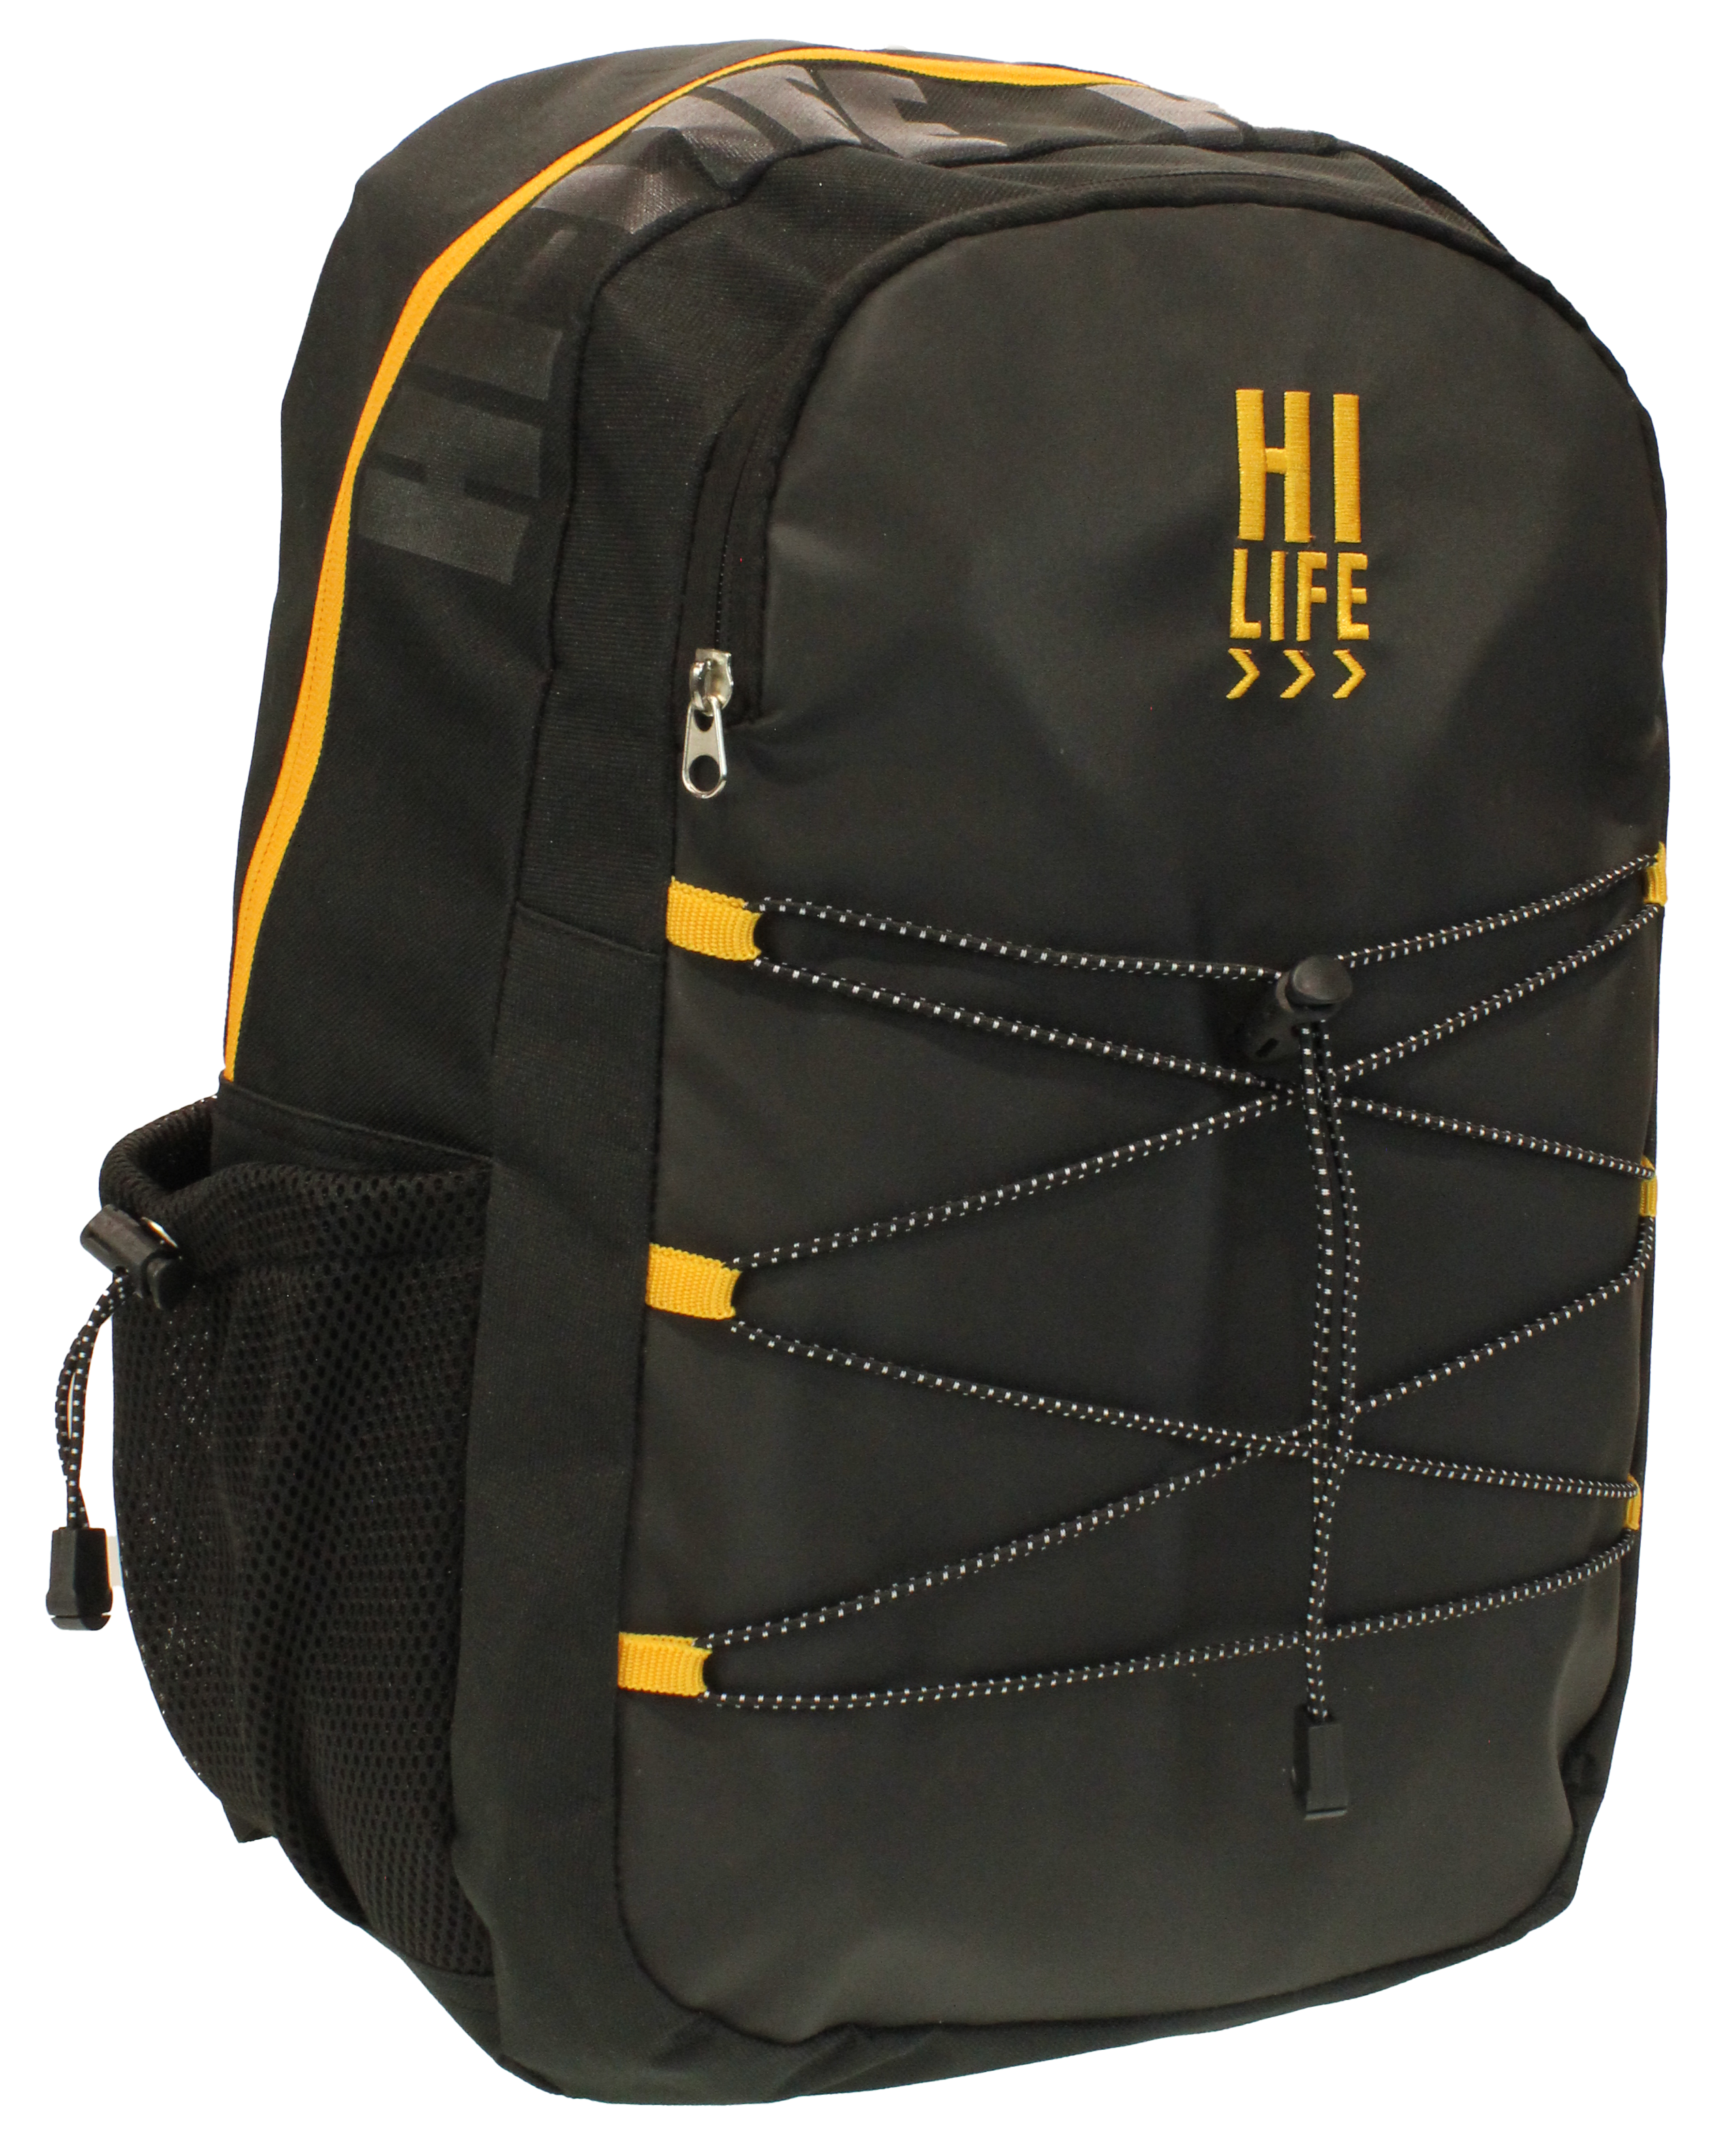 Hi-Life Student Backpack Black/Gold